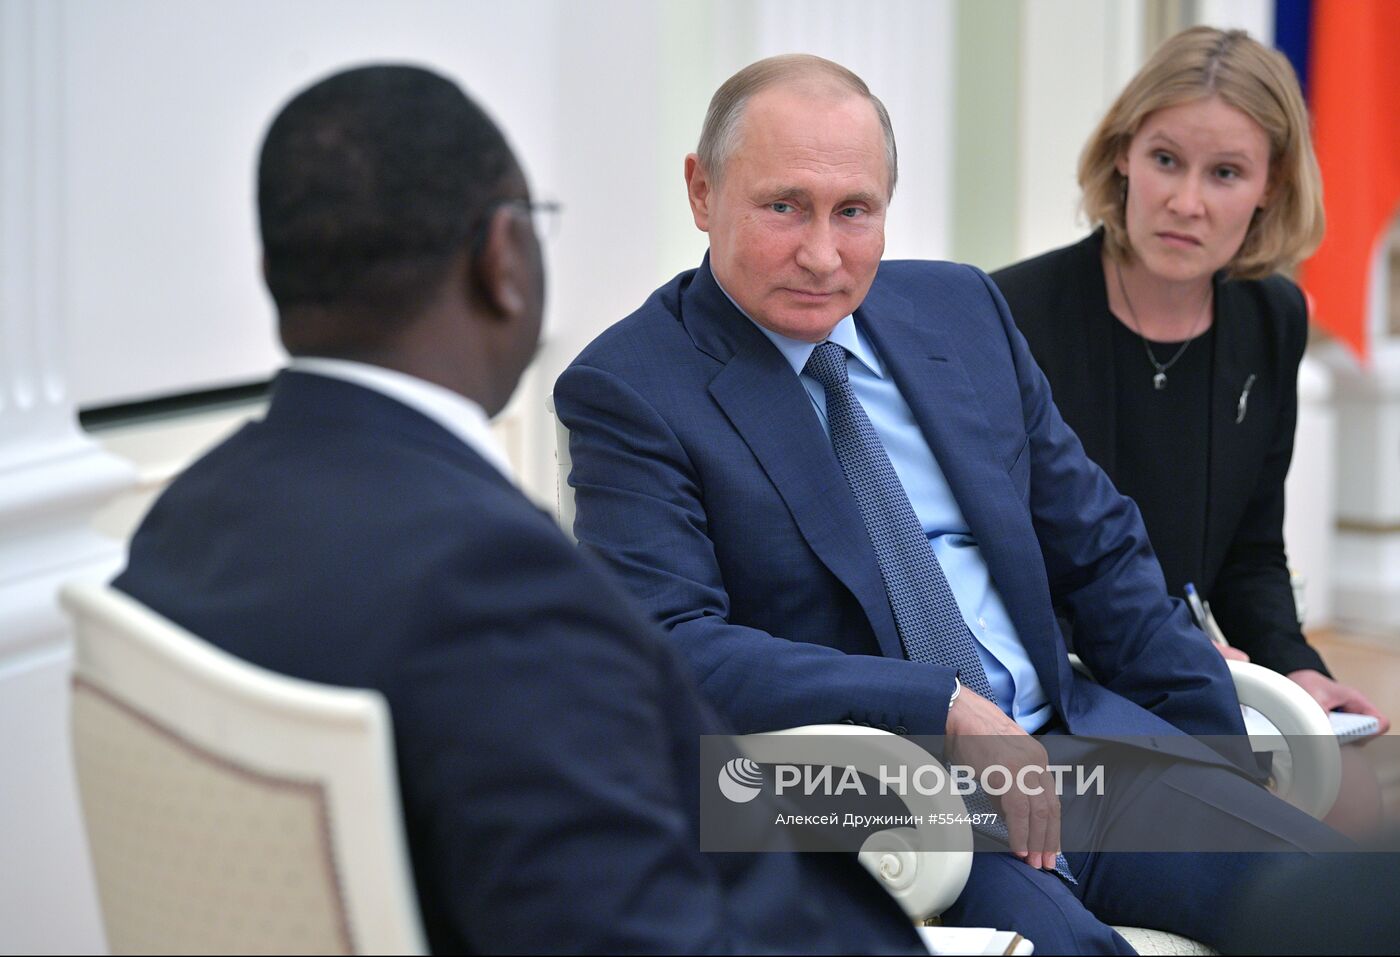 Президент РФ В. Путин встретился с президентом Сенегала М. Салла 